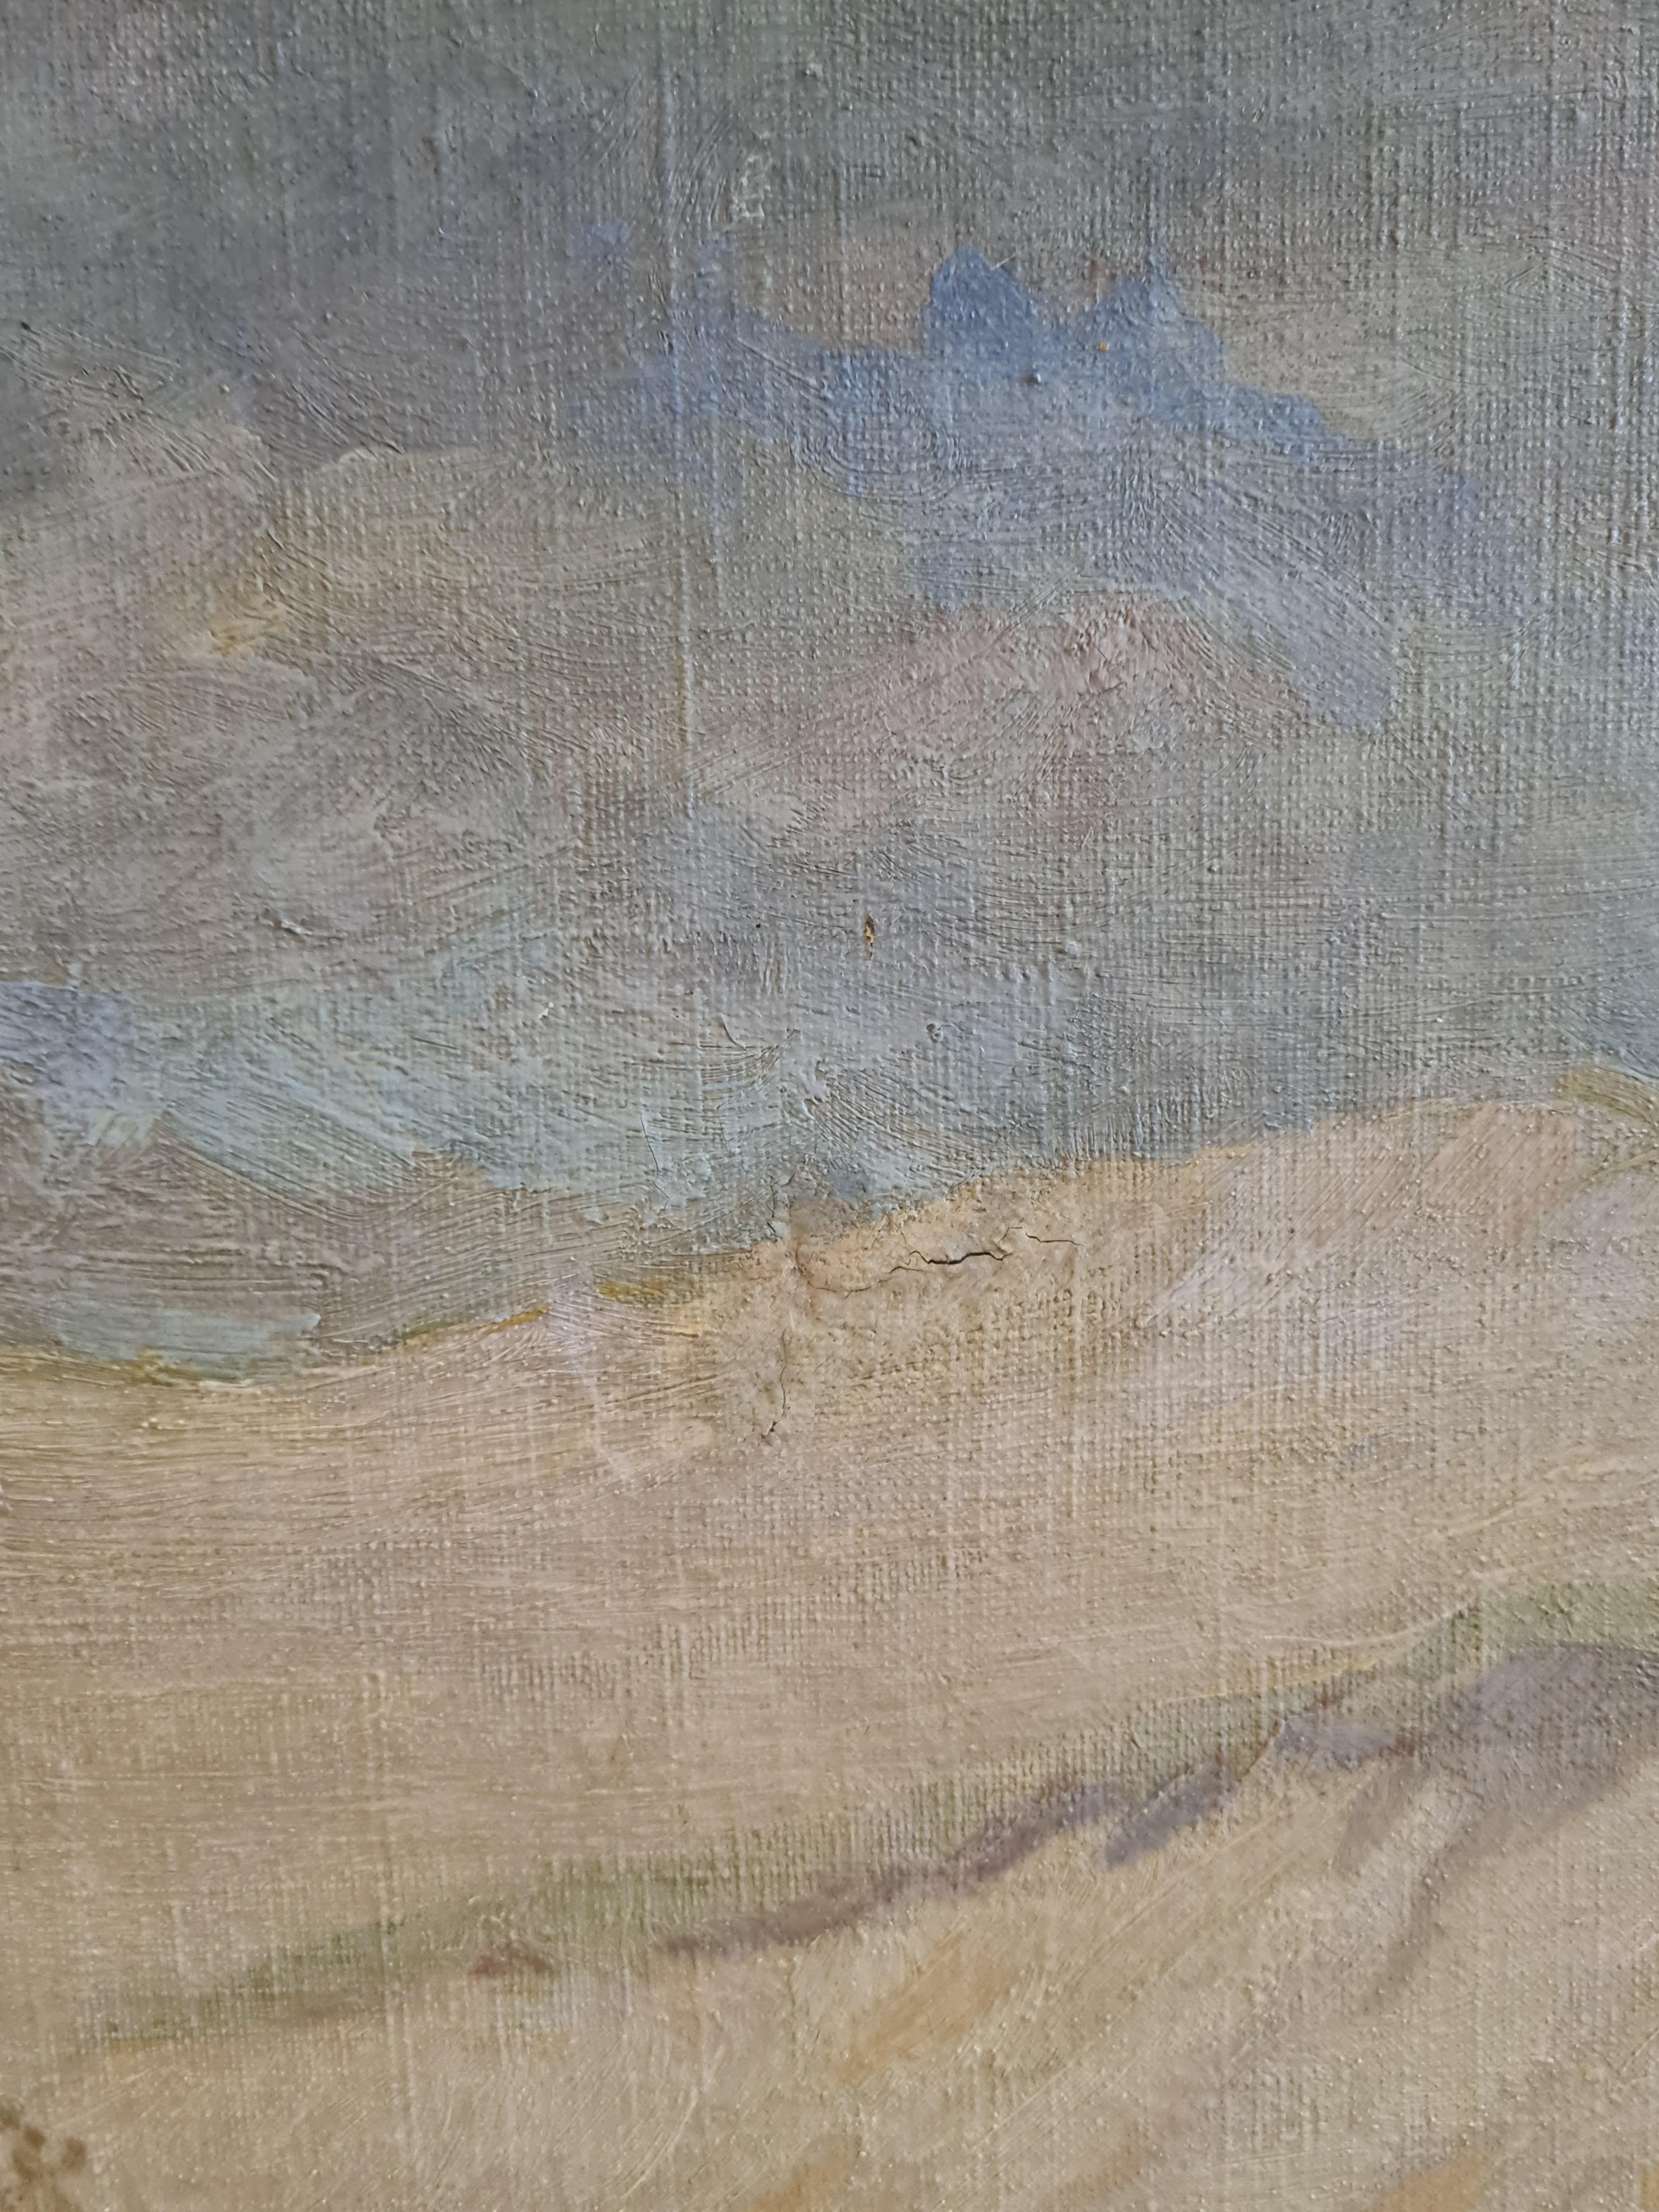 Paysage impressionniste américain de grande taille représentant une scène de neige, très probablement dans le Wisconsin, par LeRoy Ferdinand Jona. Le tableau est signé et daté en bas à droite et présenté dans un beau cadre doré.

Une vue imposante